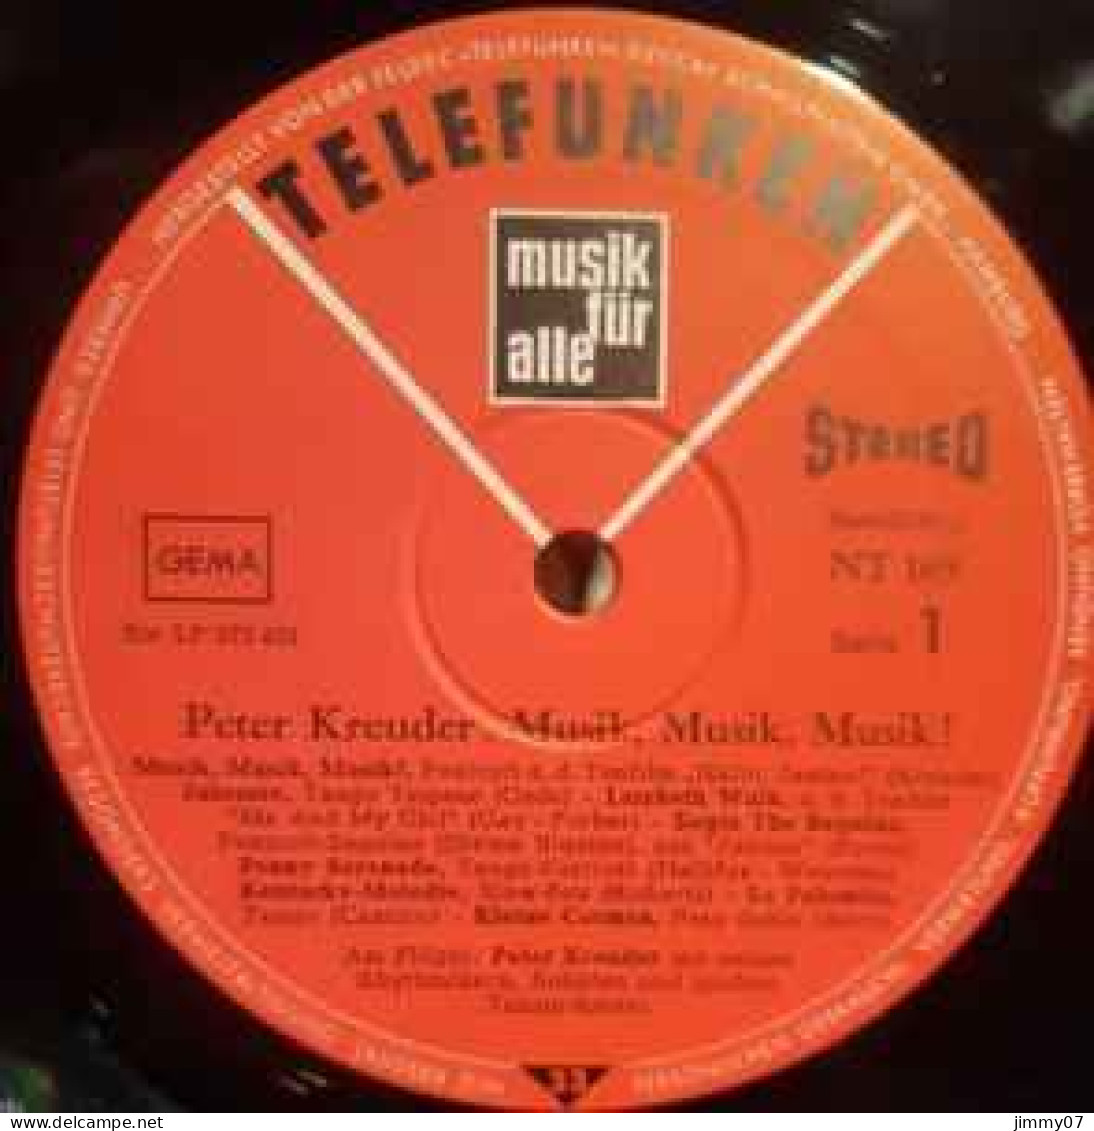 Peter Kreuder - Musik! Musik! Musik! (LP, Album) - Klassiekers